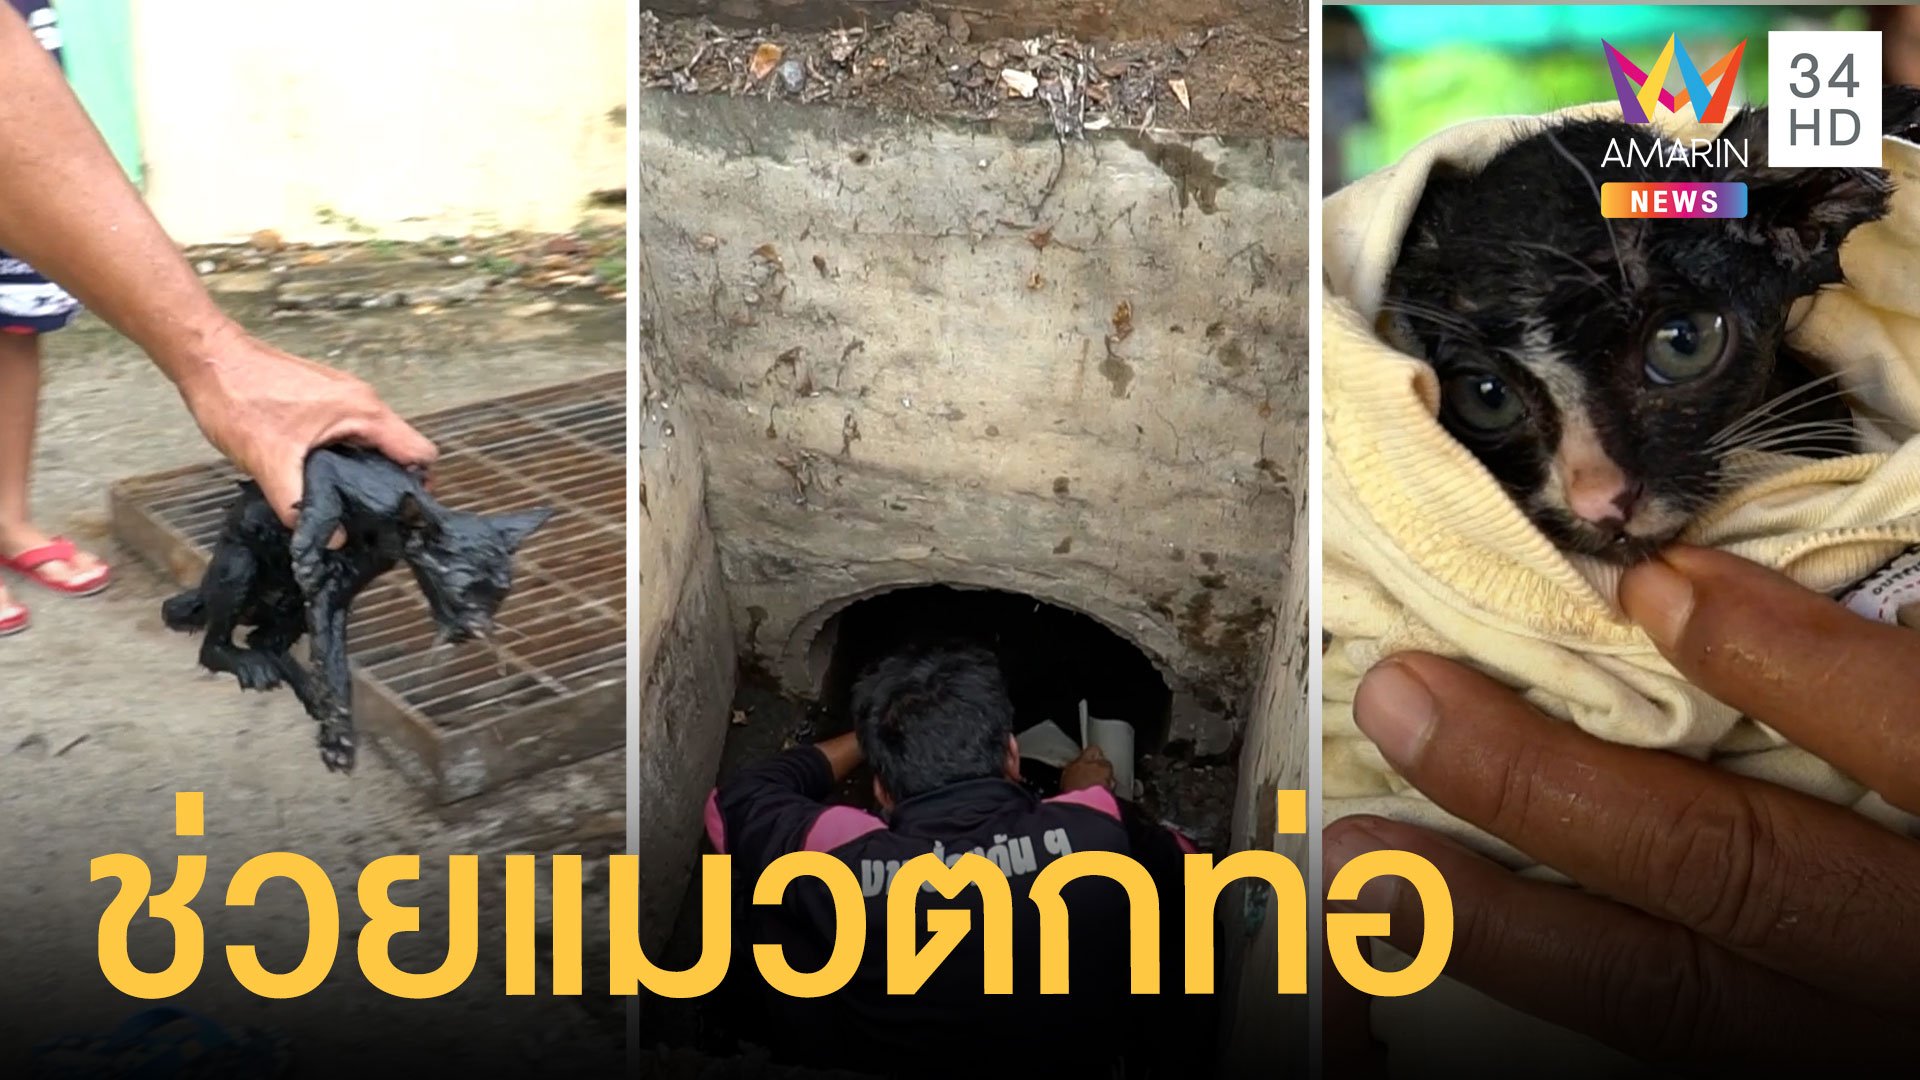 กู้ภัยเปิดภารกิจเปิดท่อระบายน้ำช่วยลูกแมว สุดท้ายรอดตาย | ข่าวอรุณอมรินทร์ | 8 พ.ย. 63 | AMARIN TVHD34